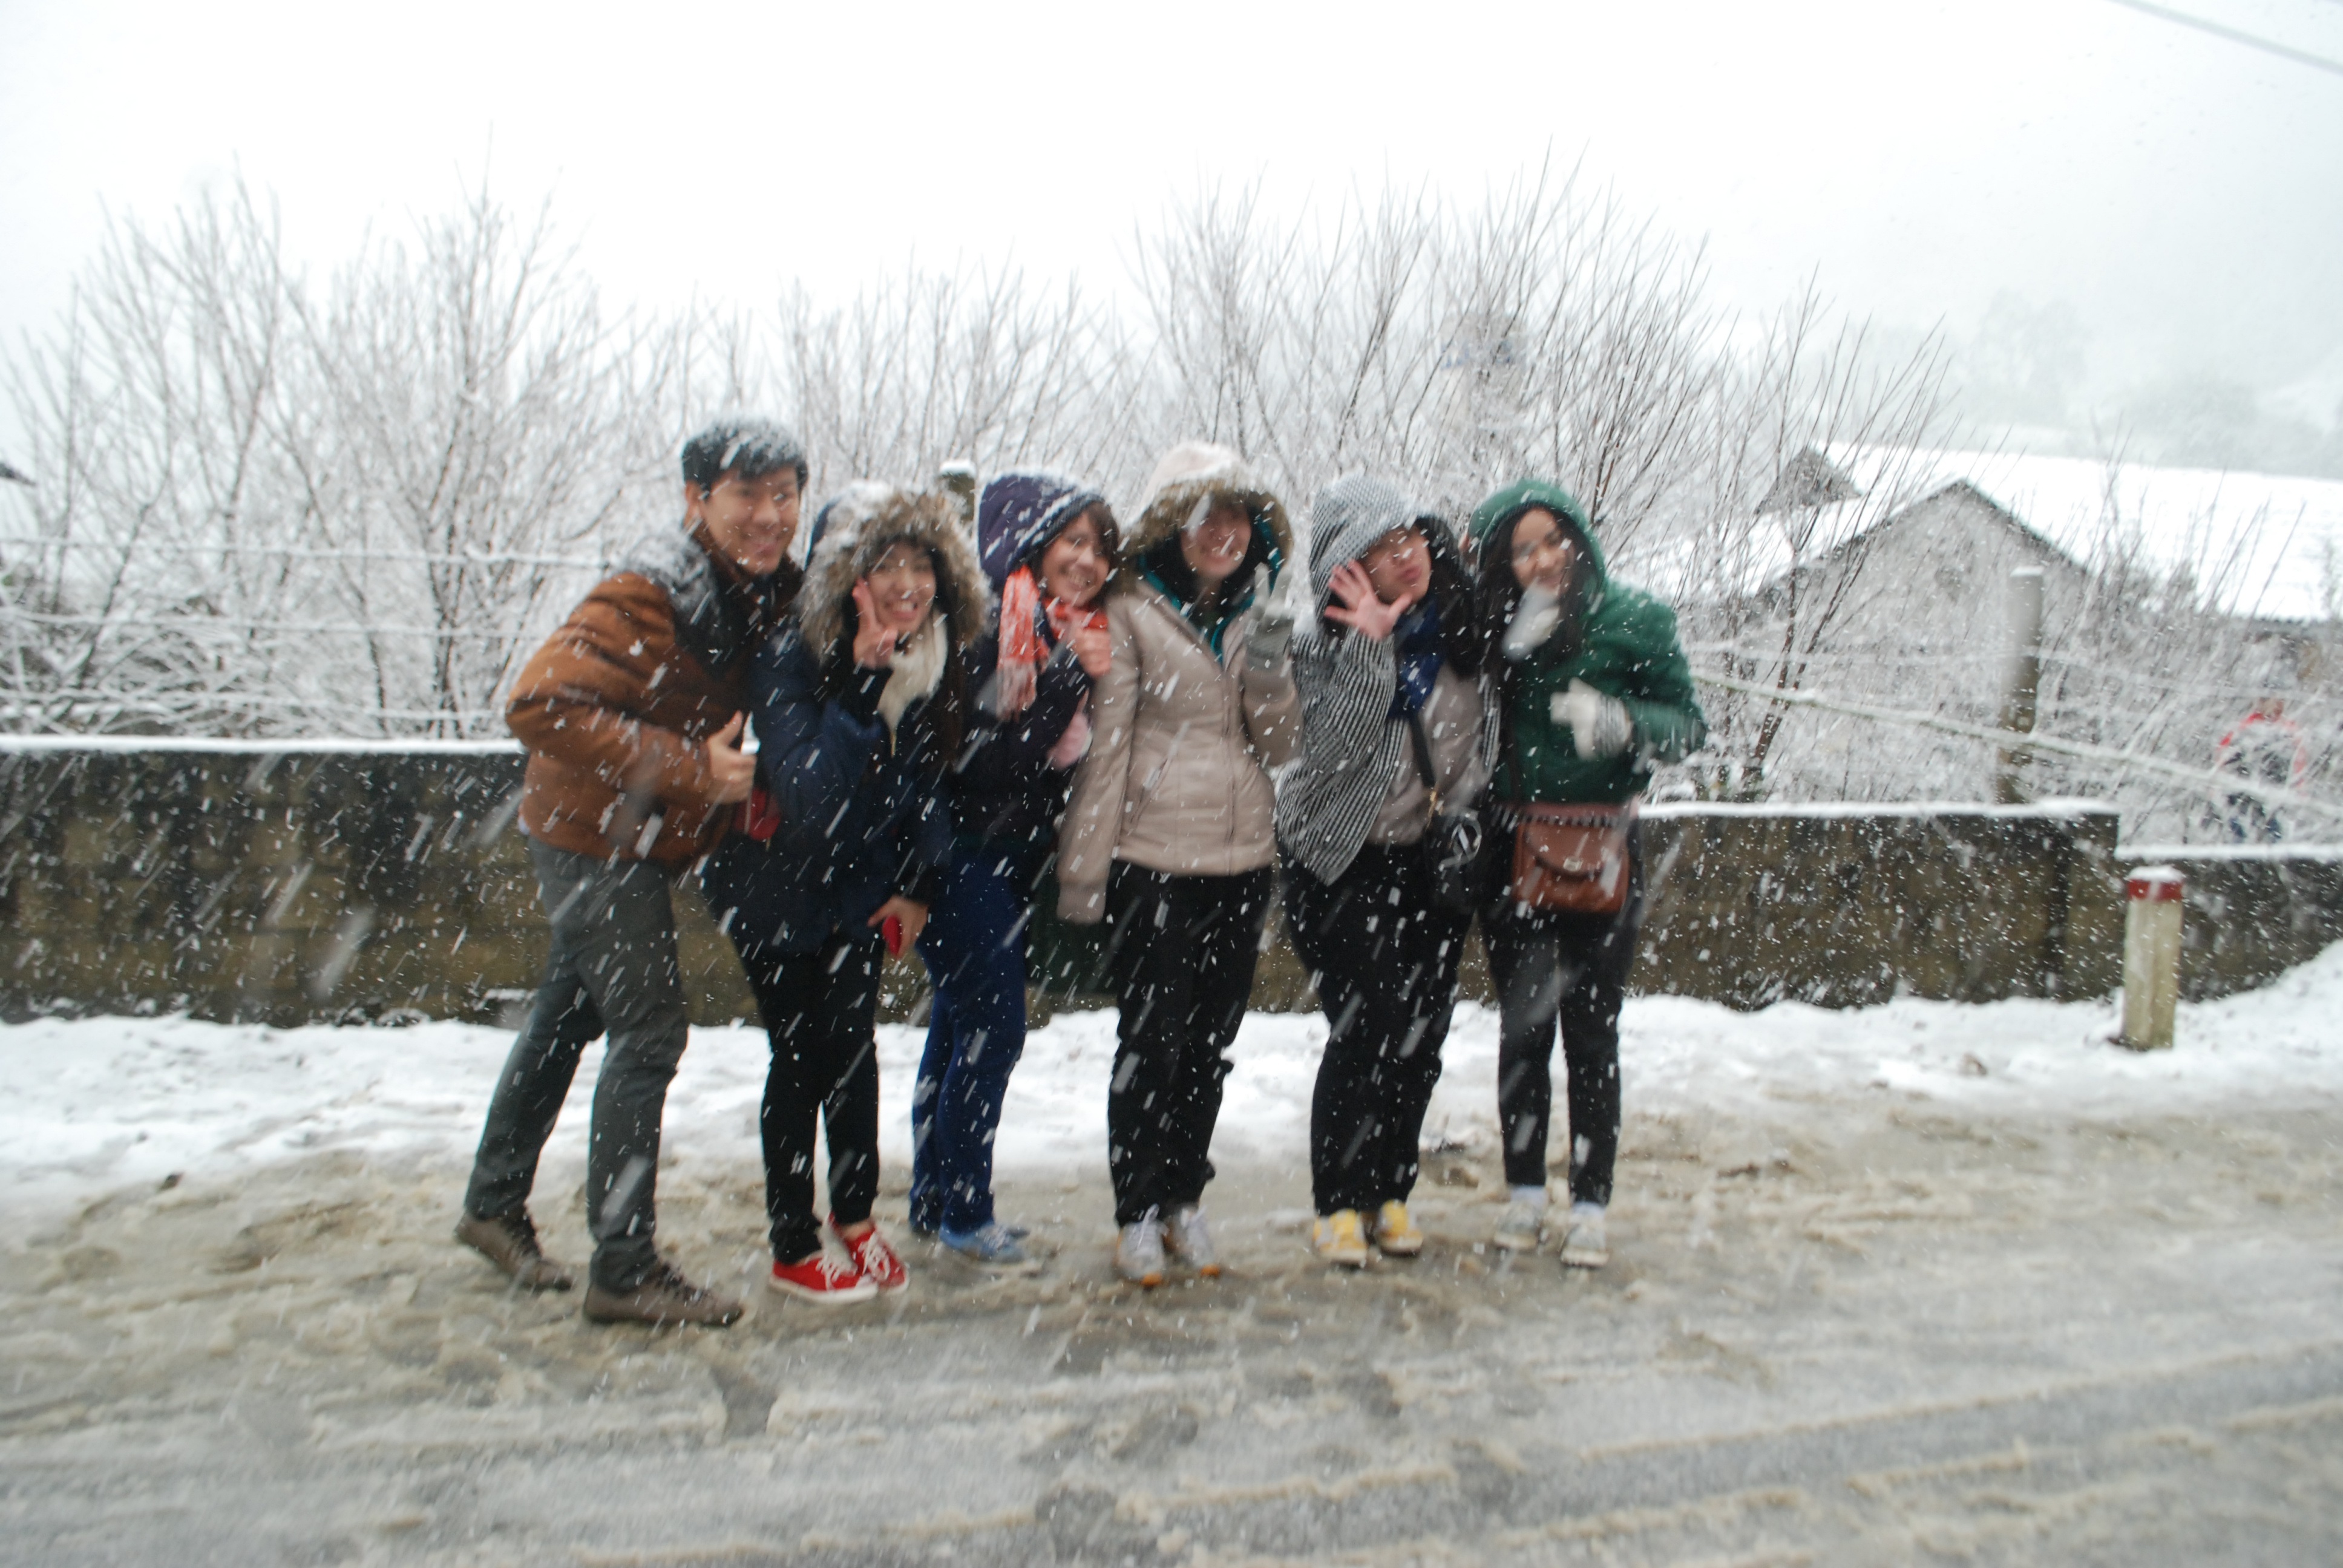 Đỉnh Fansipan có thể đón mưa tuyết dịp Tết Dương lịch - Ảnh 2.